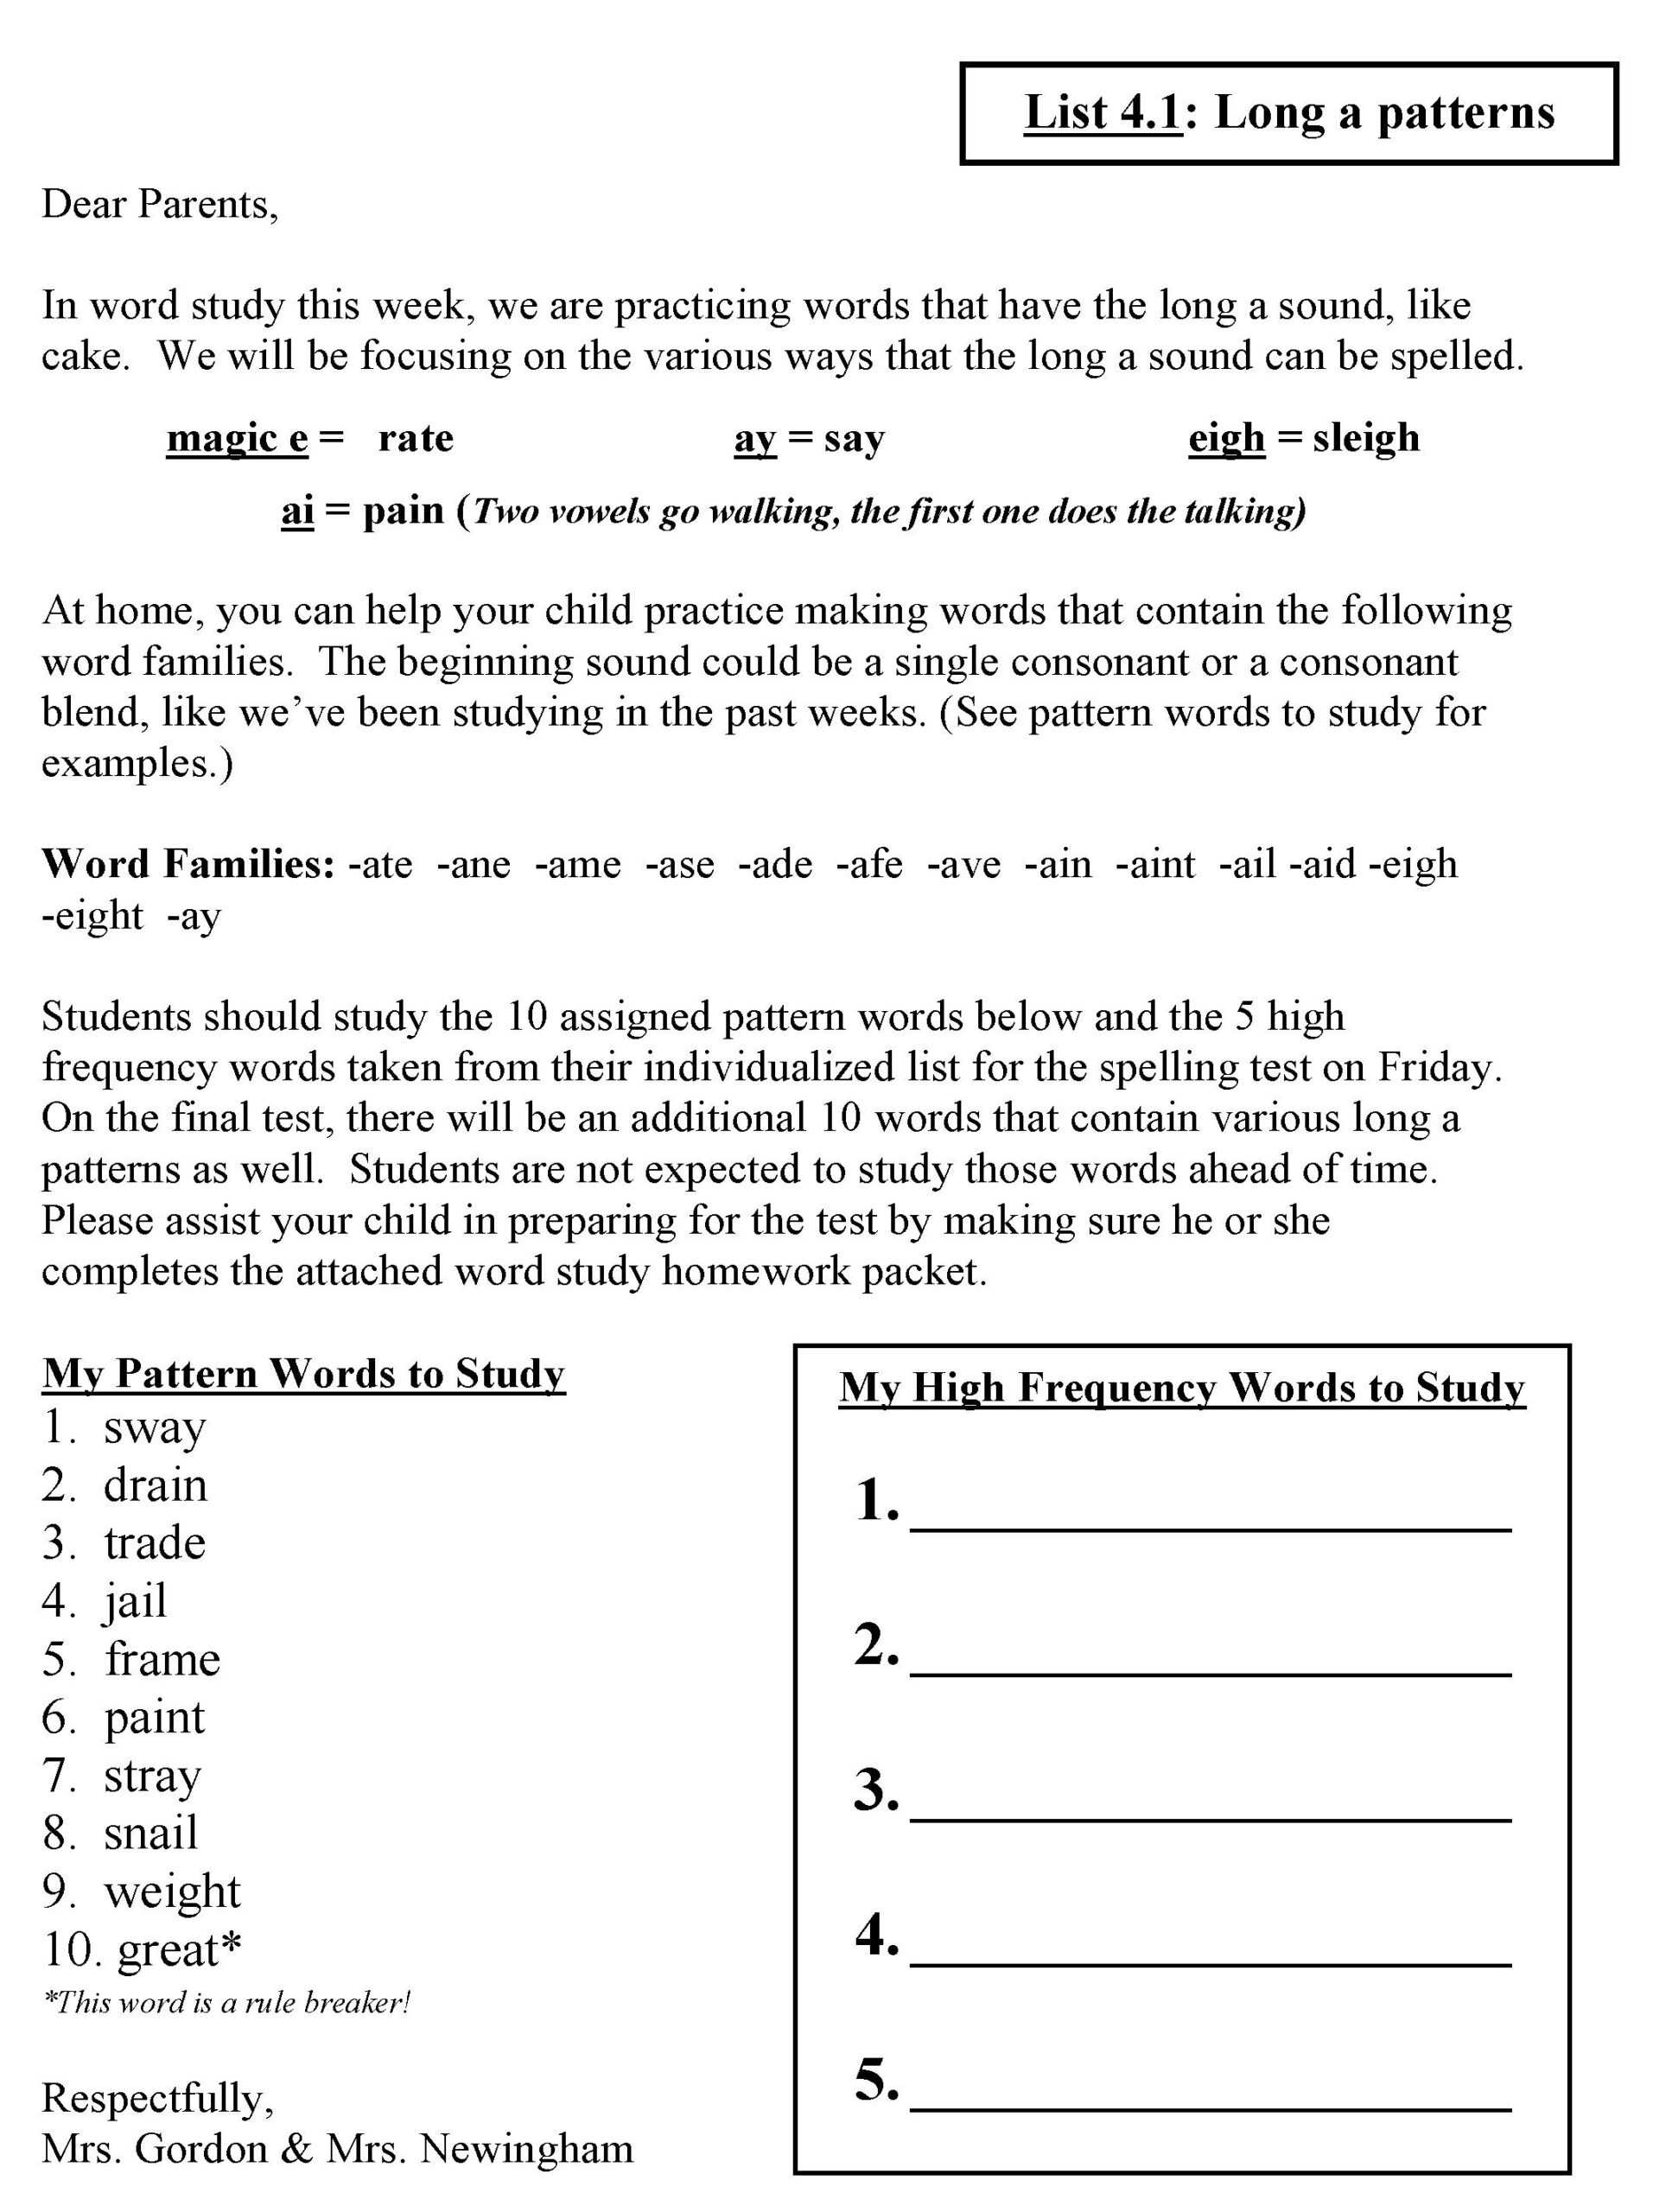 Words Their Way Hw Letter | Word Study, Word Sorts, Spelling Regarding Words Their Way Blank Sort Template